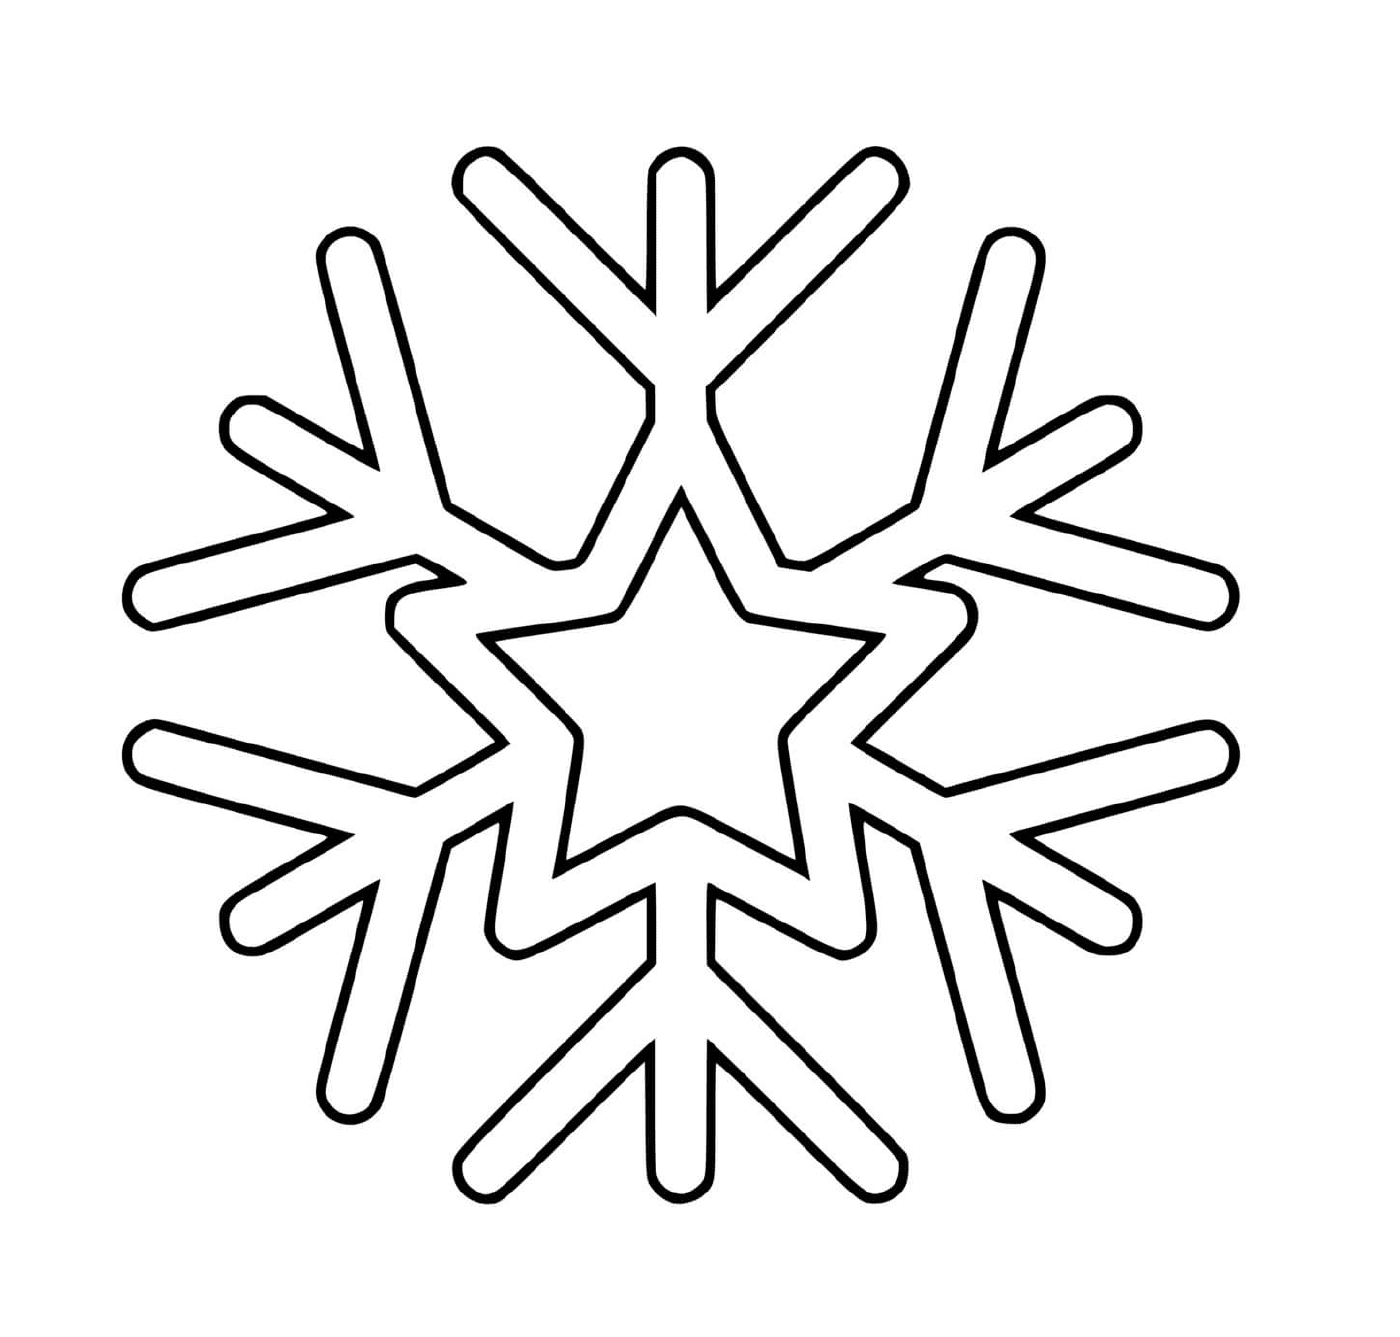  Un fiocco di neve con una stella 